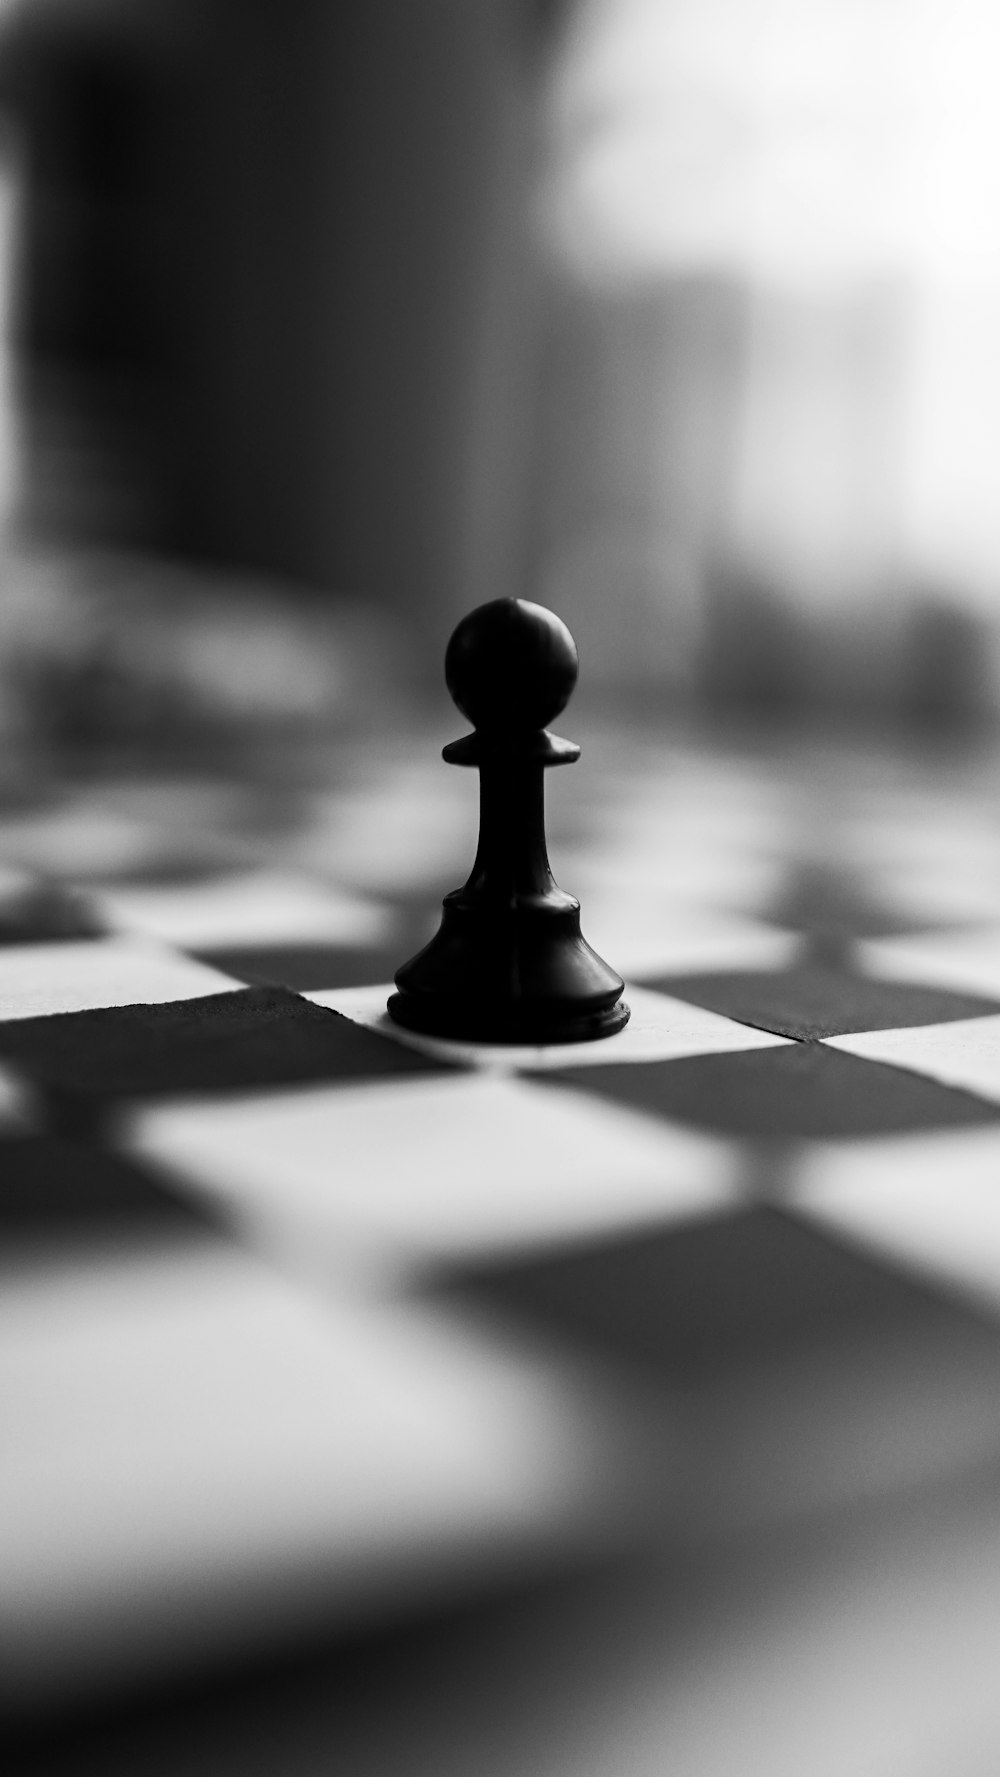 pièce d'échecs noire sur textile à carreaux blanc et noir